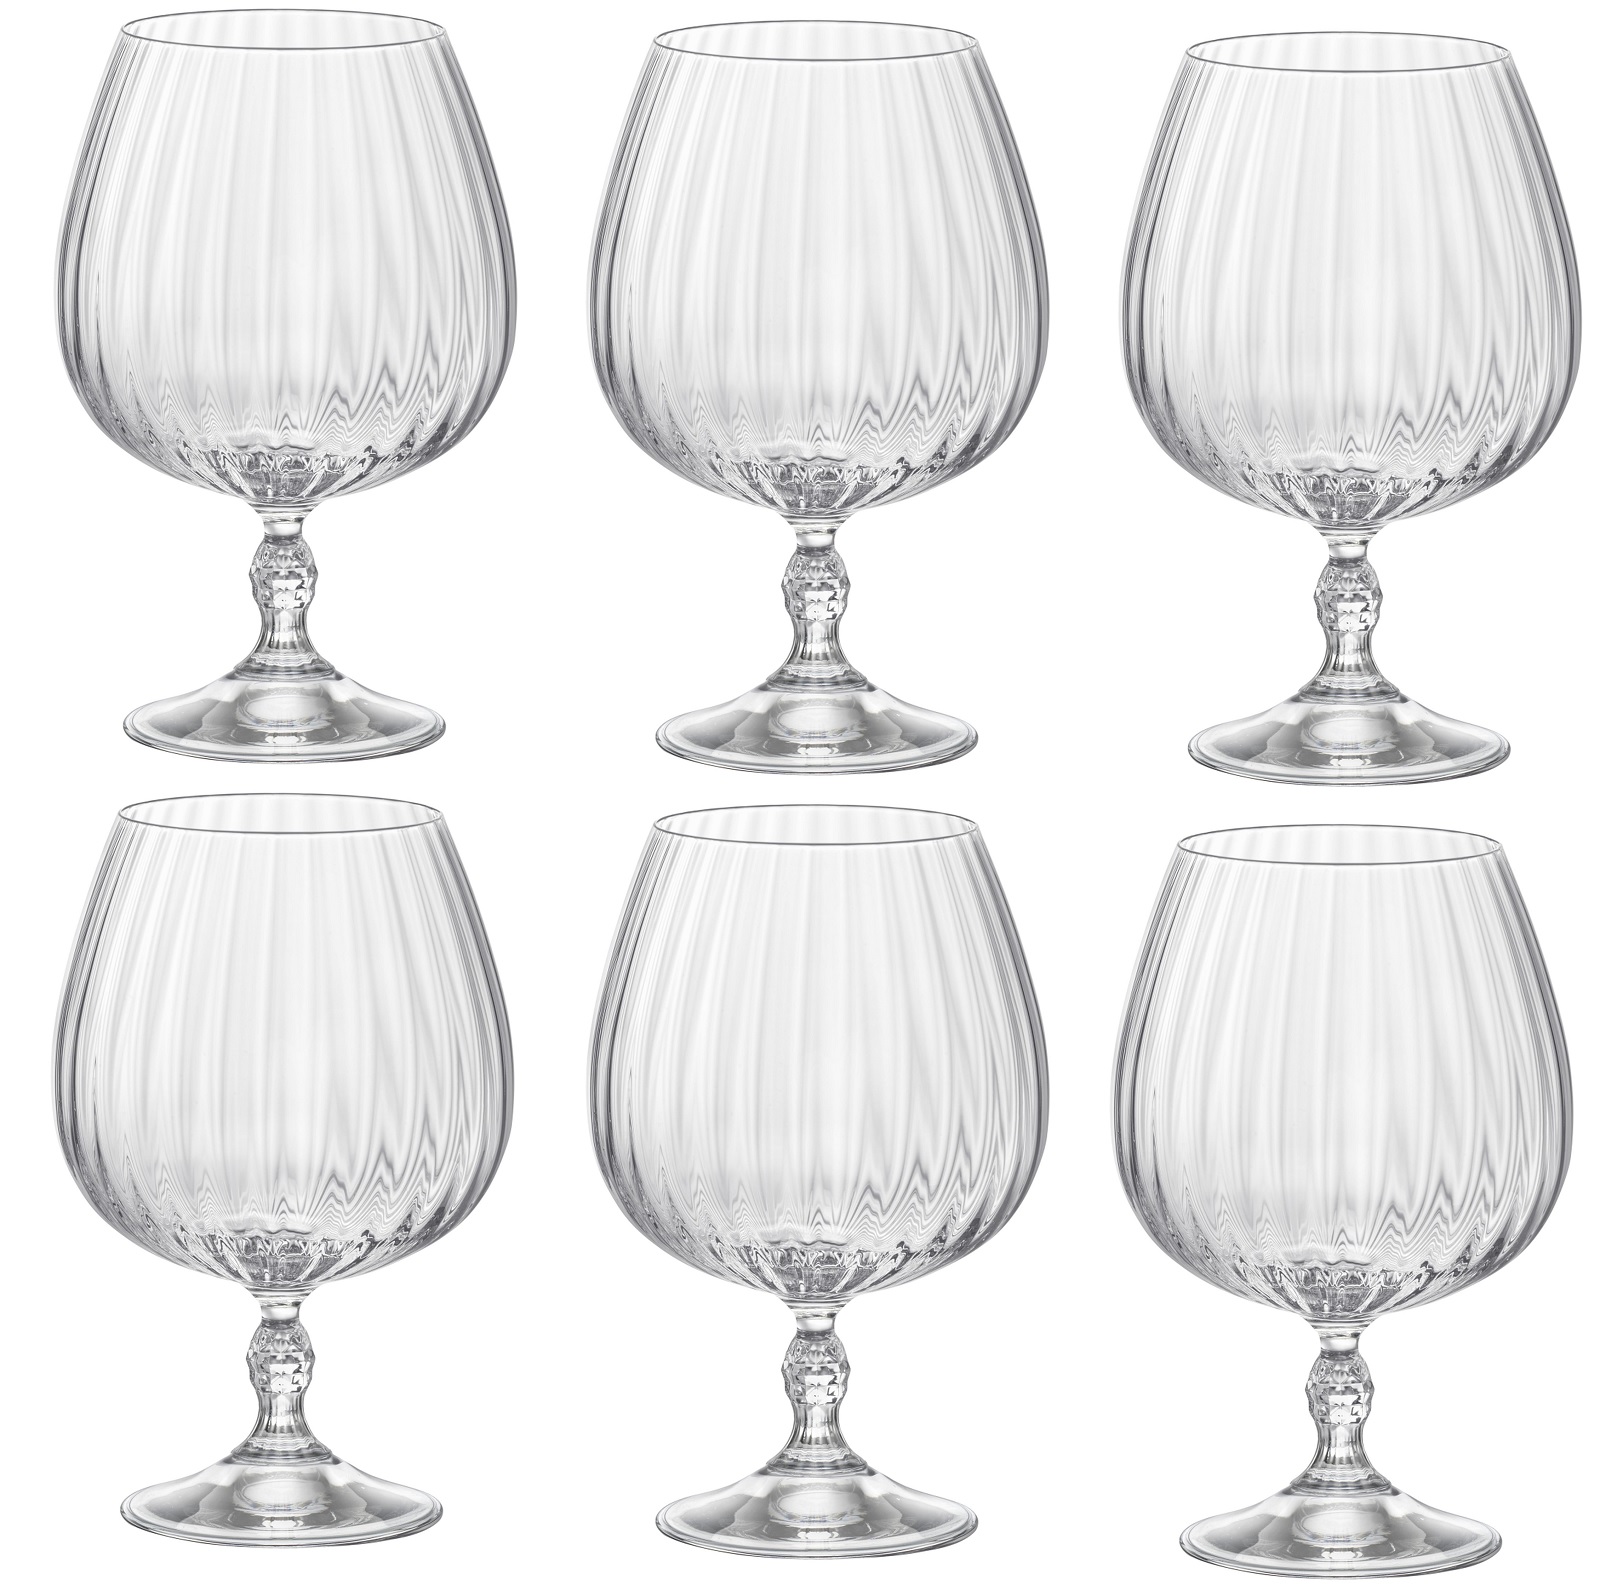 Cognac glas Kwaliteit cognac glazen online